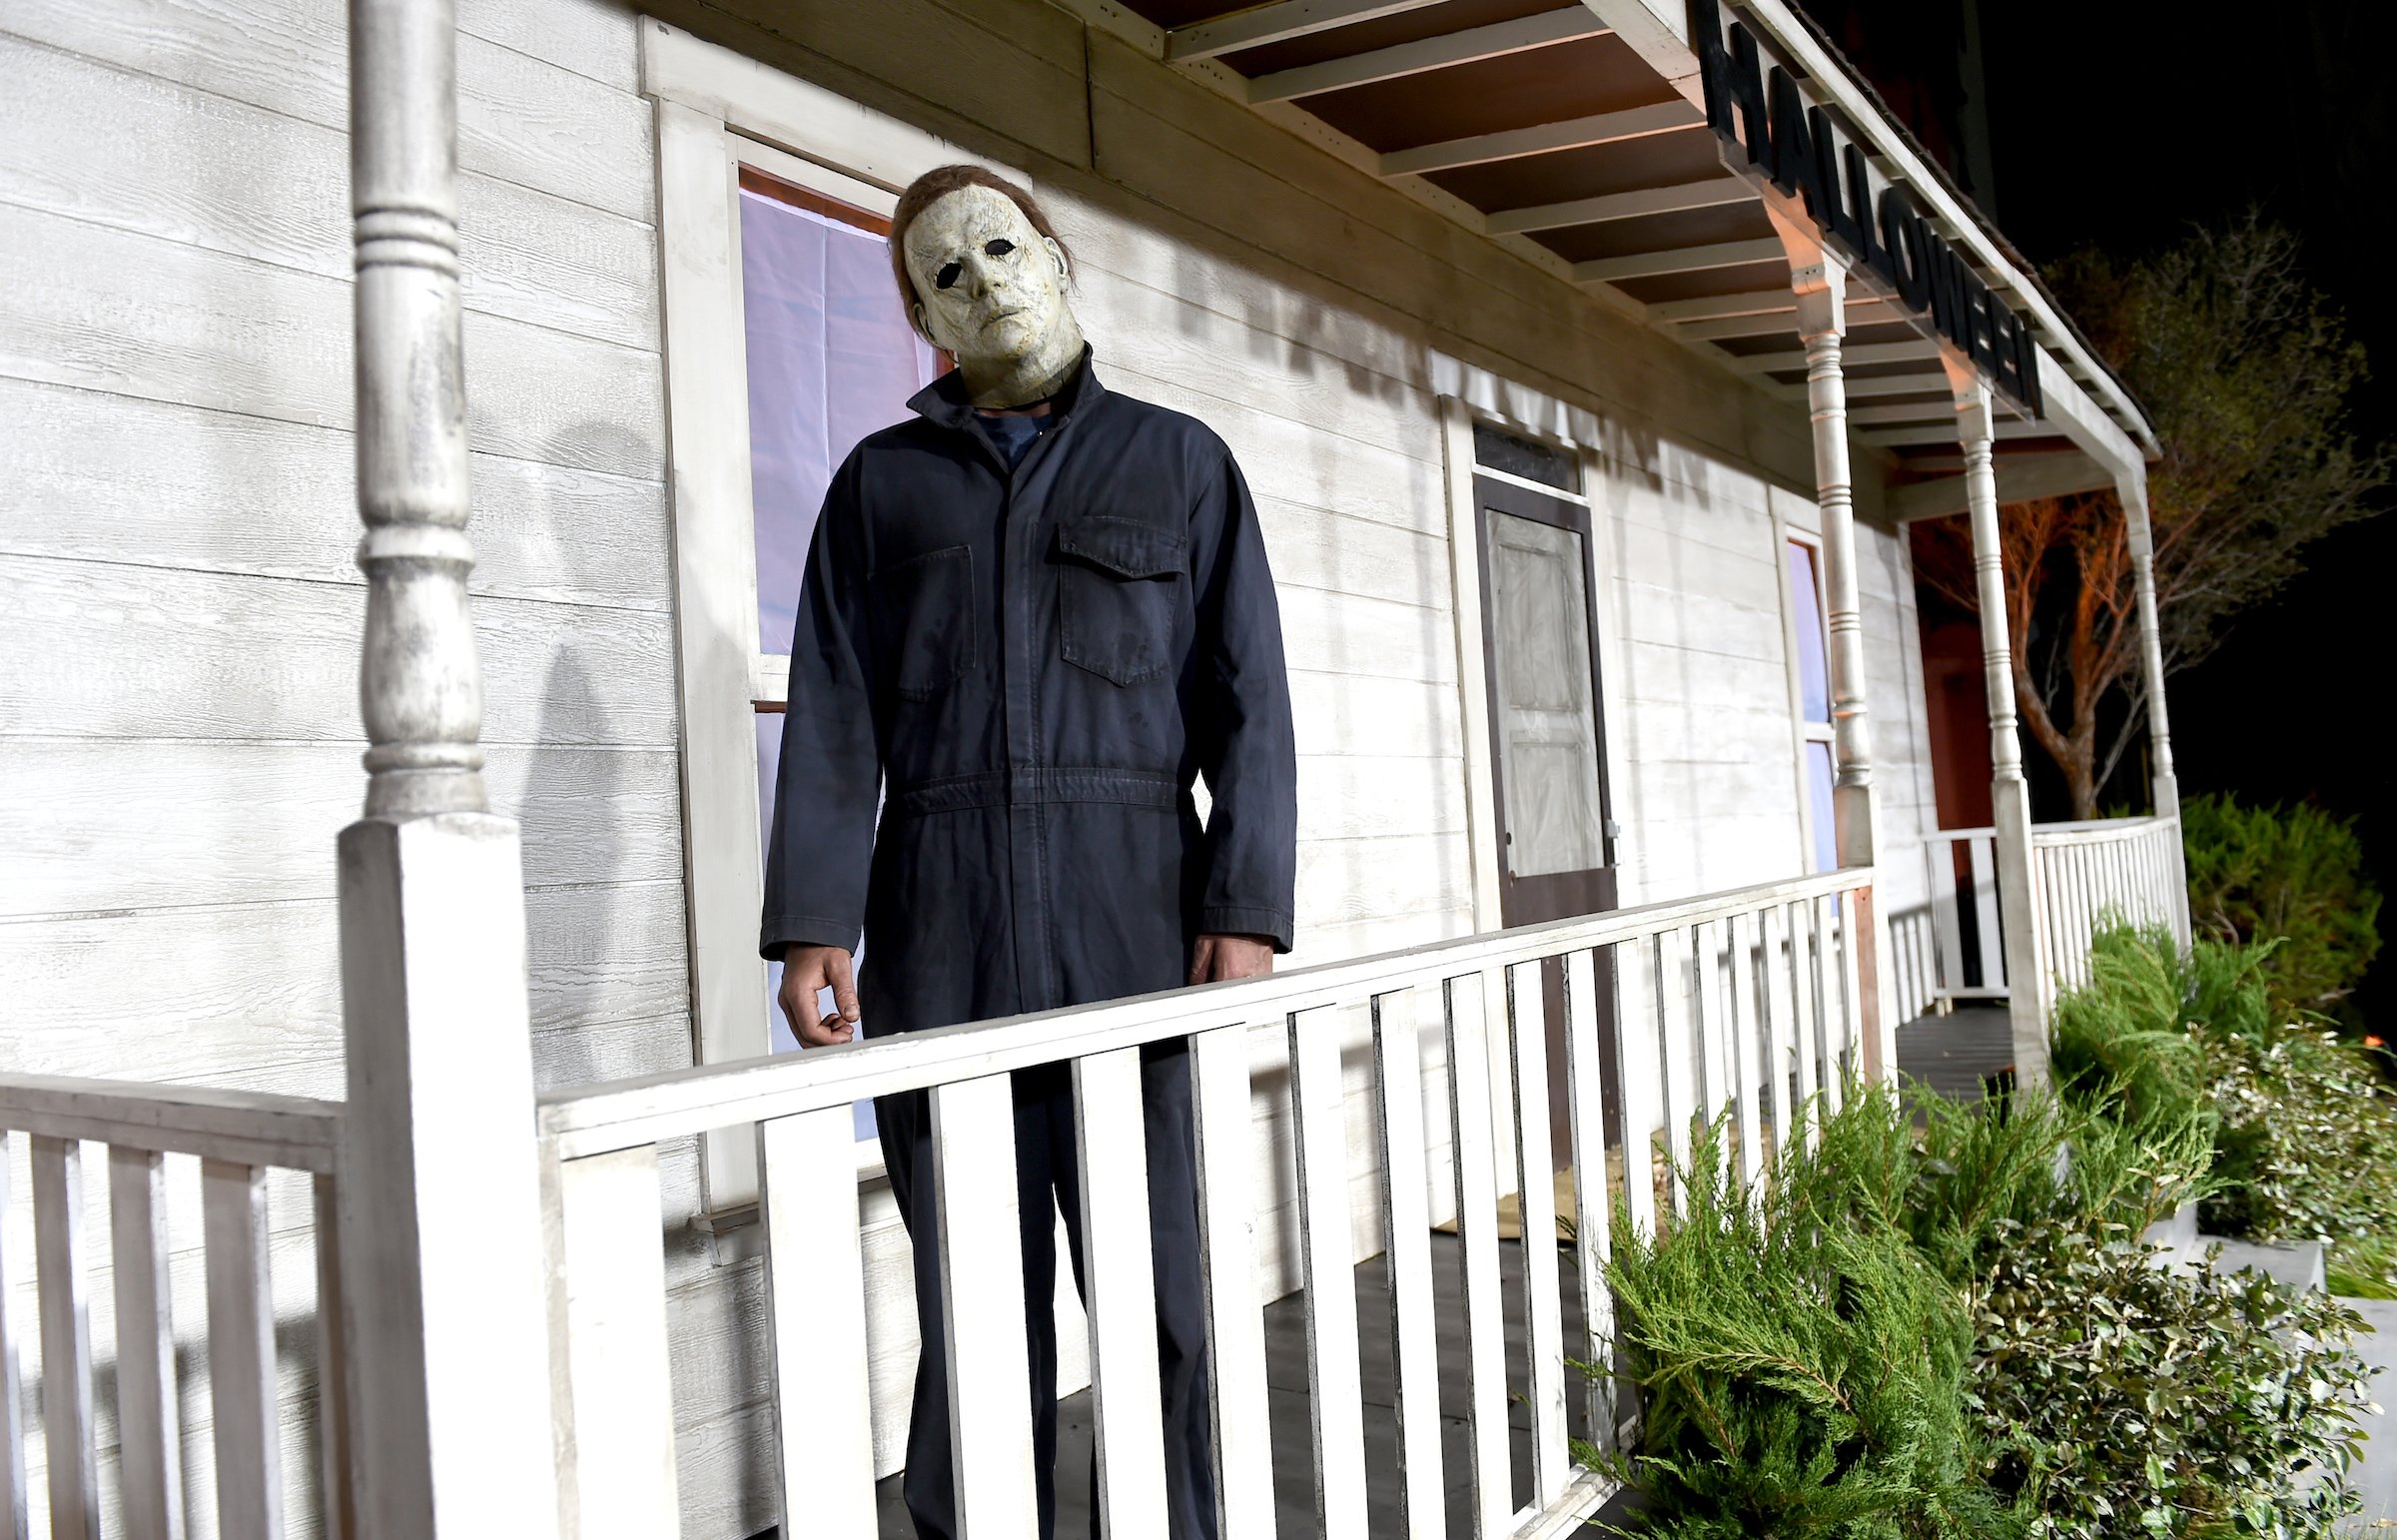 ‘Halloween Kills’: Does the Extra Gore Kill the New Horror Movie?